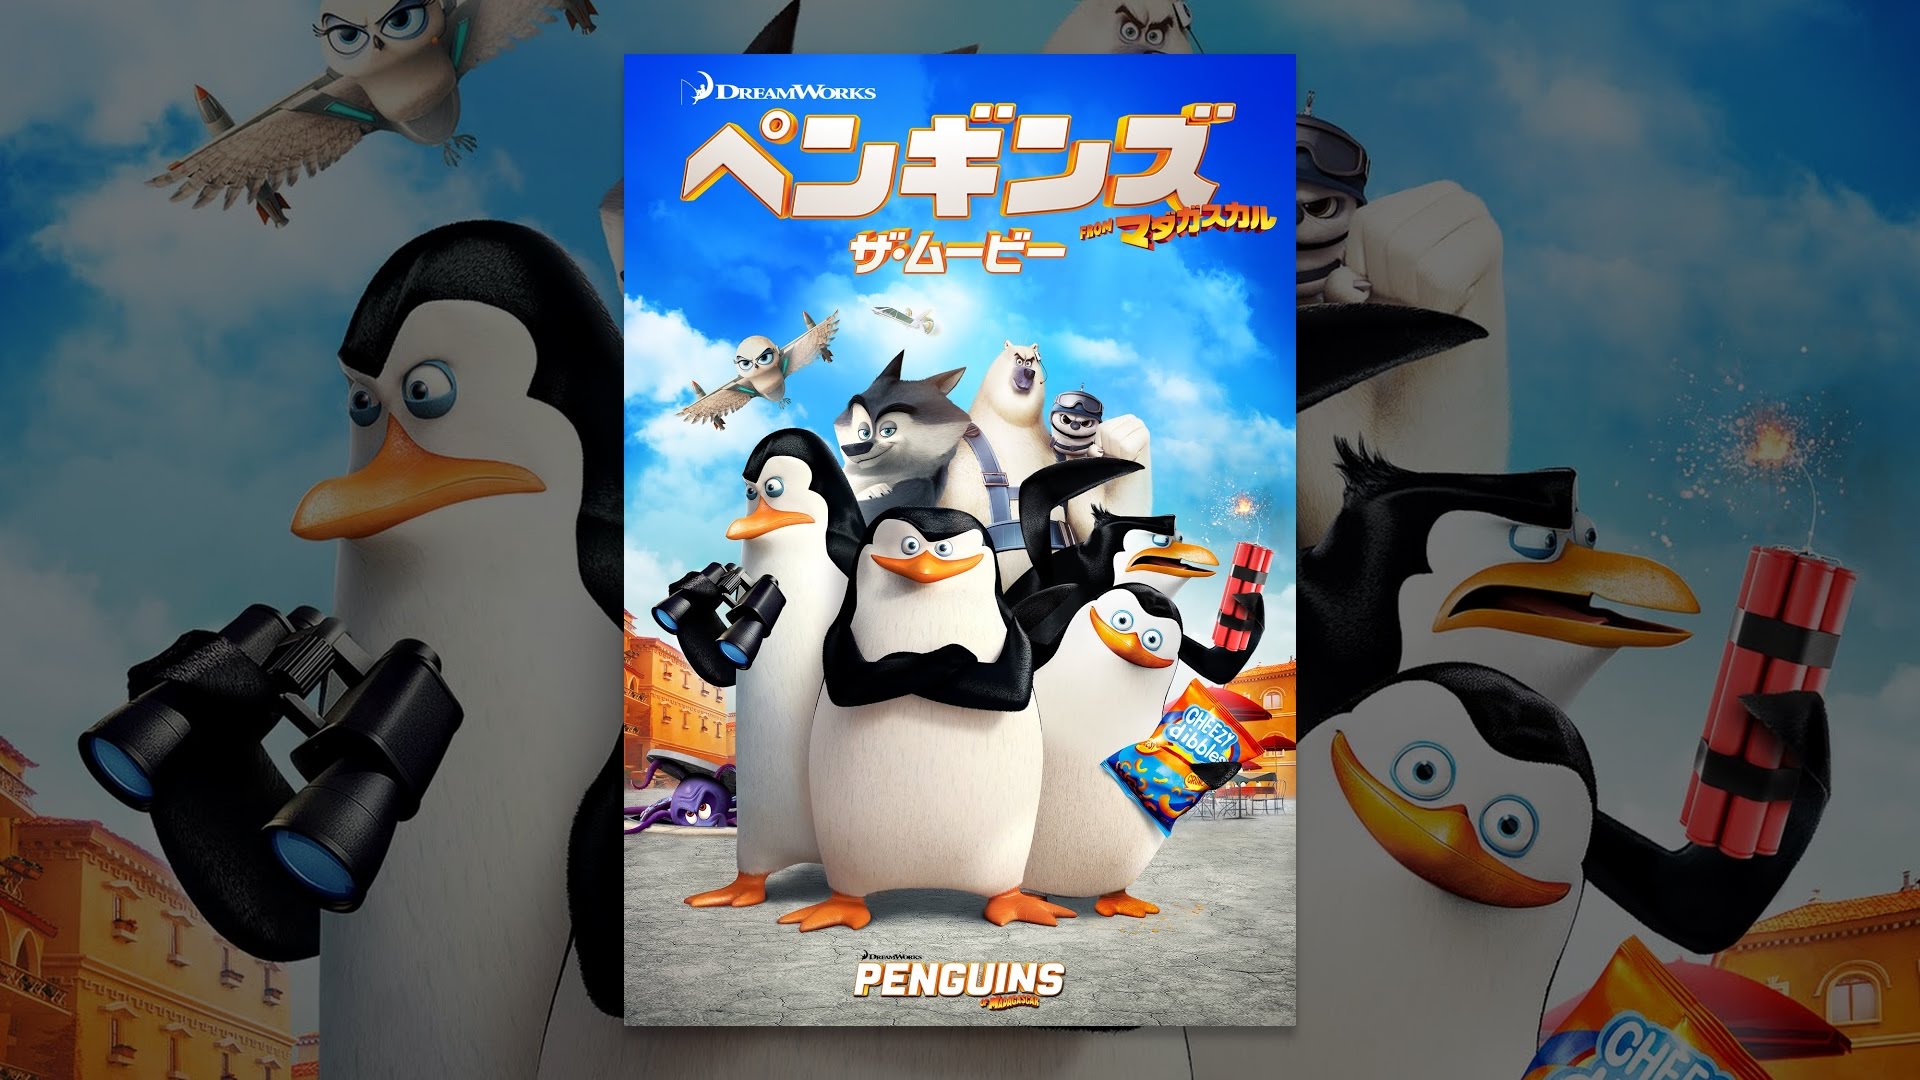 ペンギンキャラ人気ランキングtop 年最新版 11 15位 ランキングー